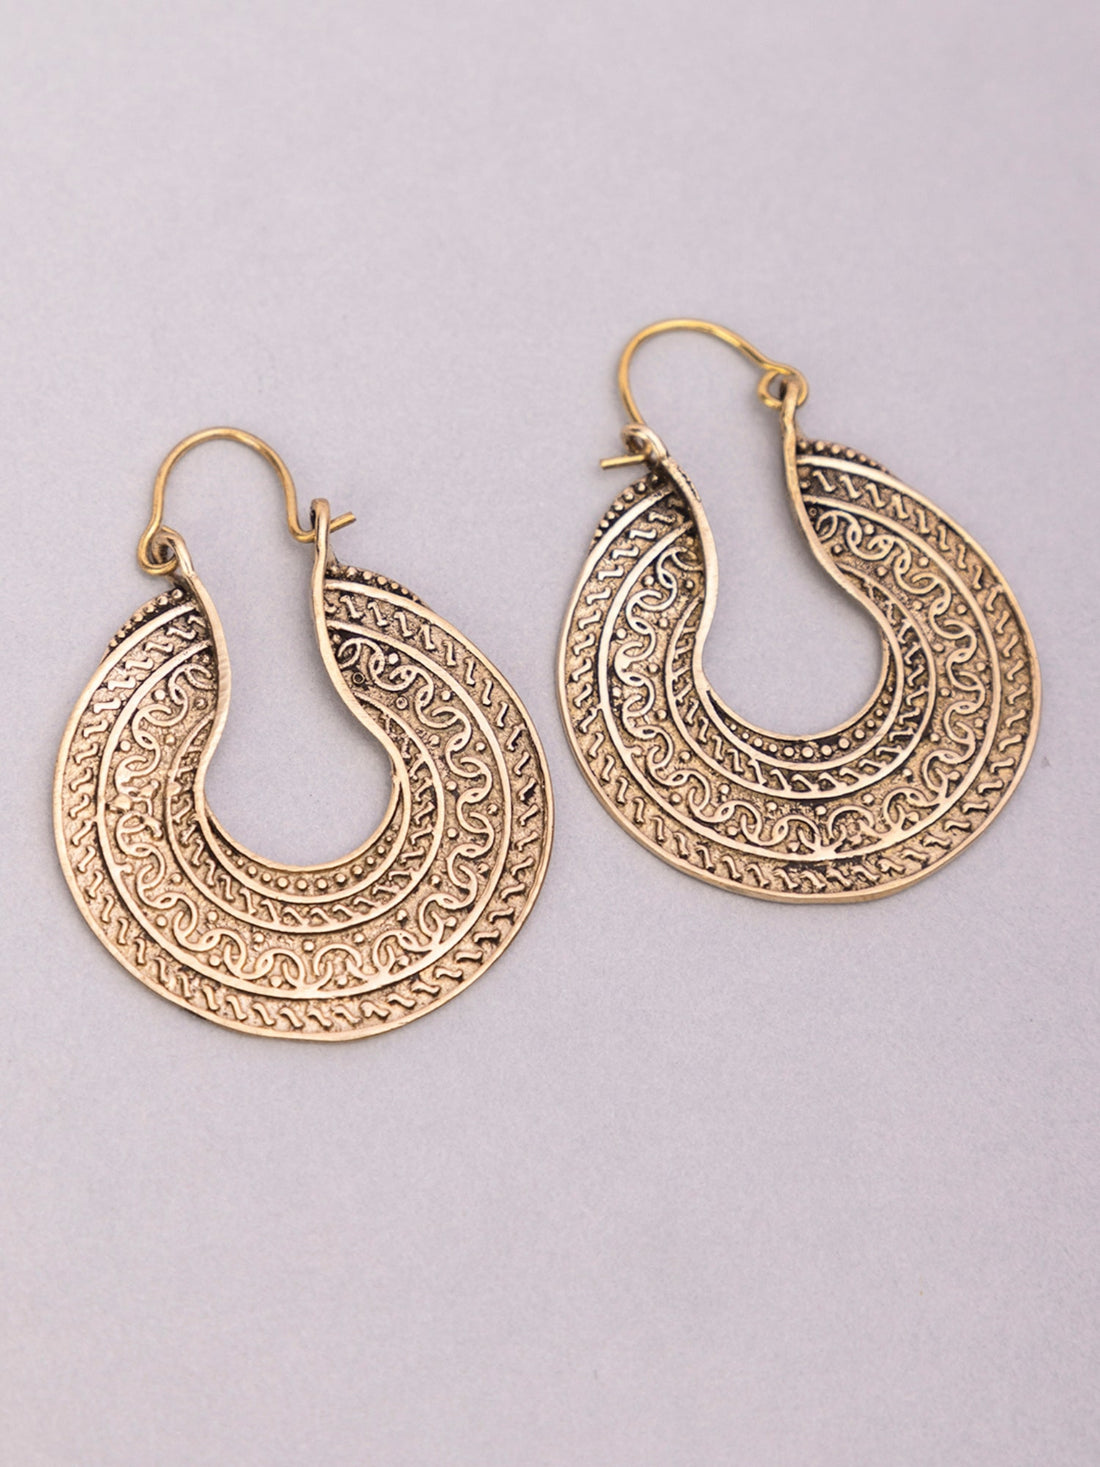 Festive Wear Chandbaalis Earrings - Traditional Gold-Plated Brass Earrings By Studio One Love